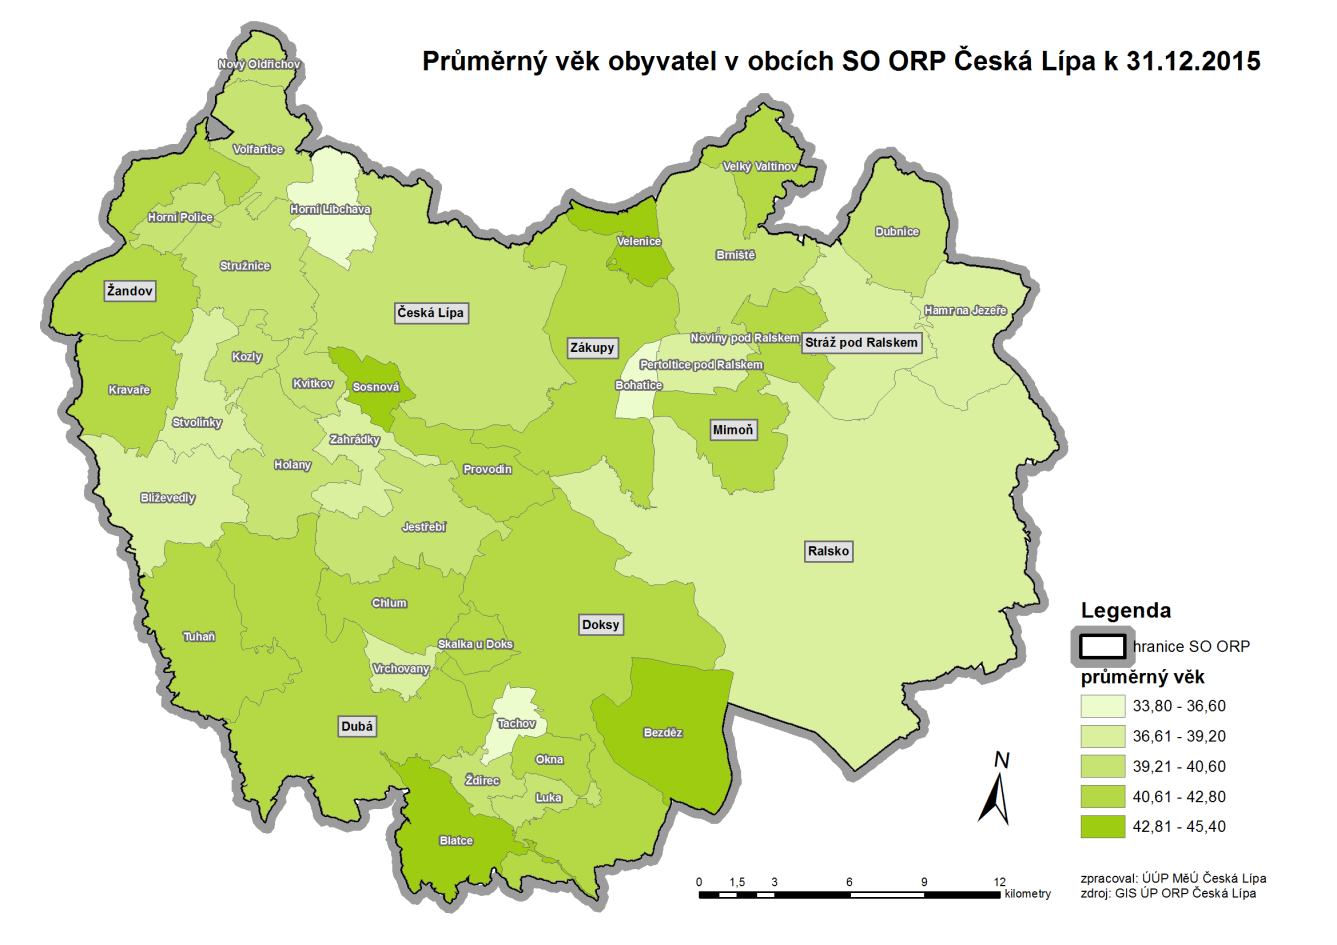 Vývoj počtu obyvatel v obcích ORP Česká Lípa a počet a věkové složení obyvatel v obcích SO ORP Česká Lípa jsou uvedeny v tabulkách přílohy PRURÚ.